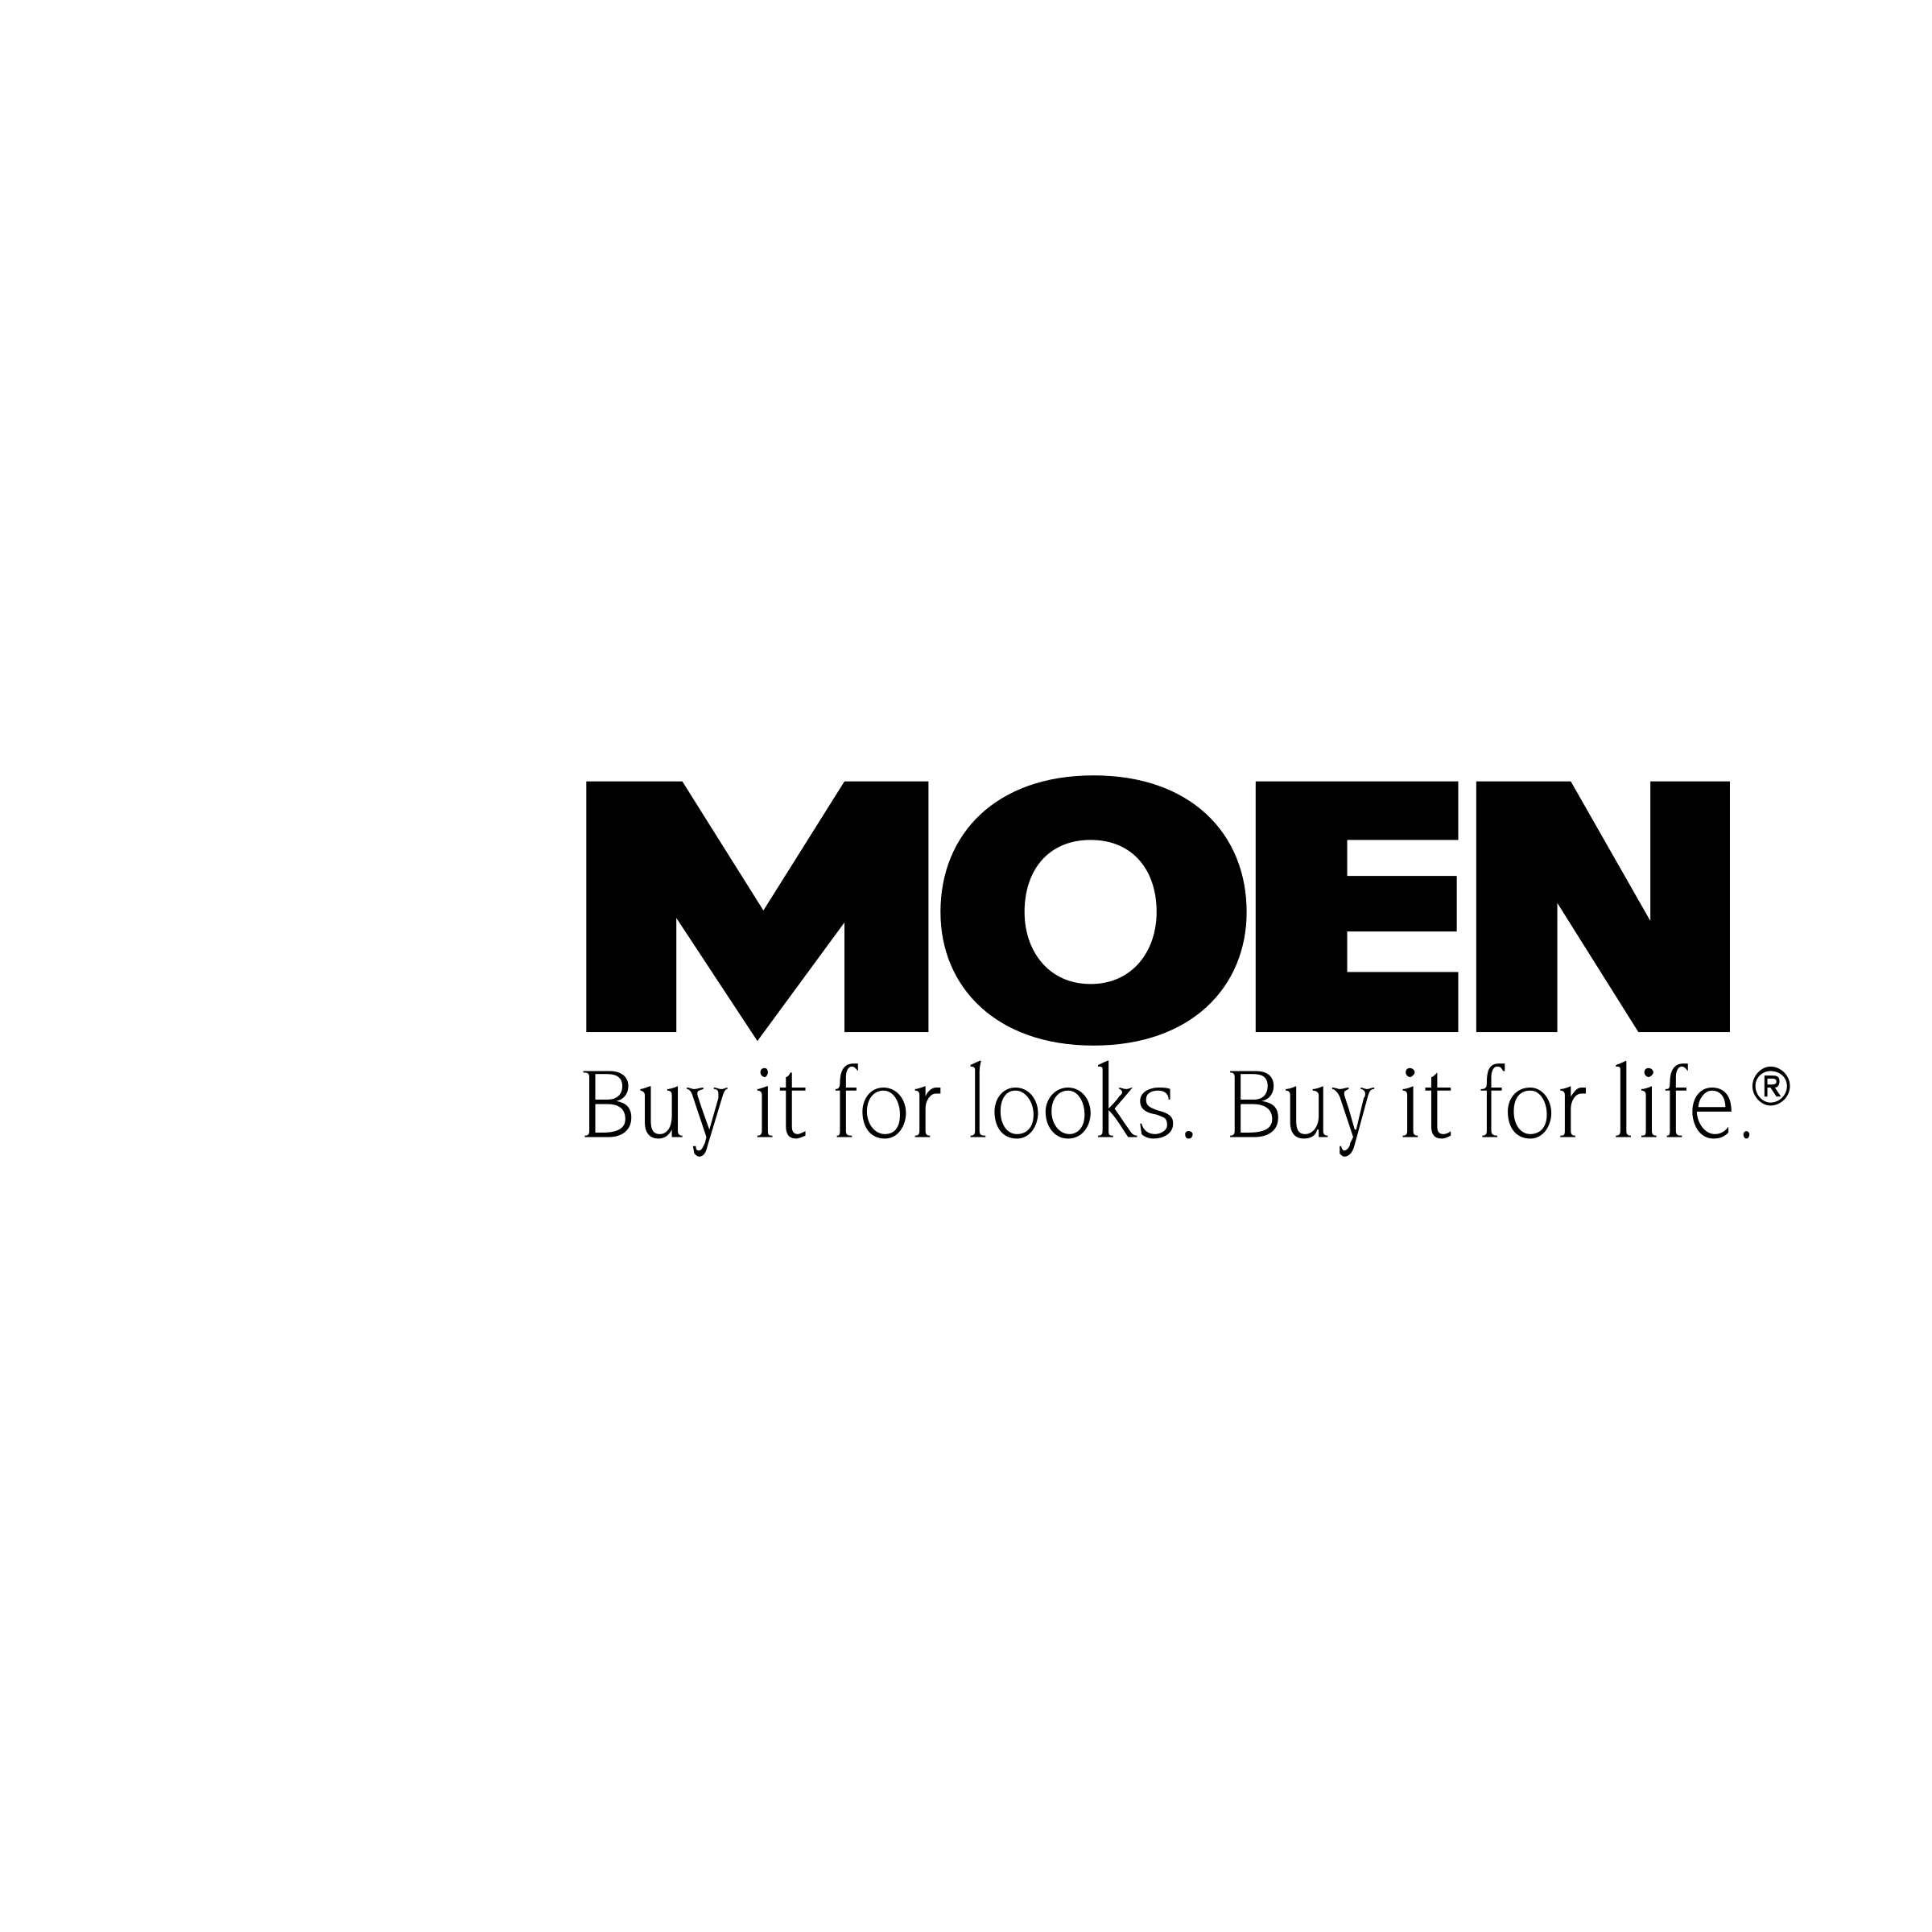 Moen Logo - Moen Logo PNG Transparent & SVG Vector